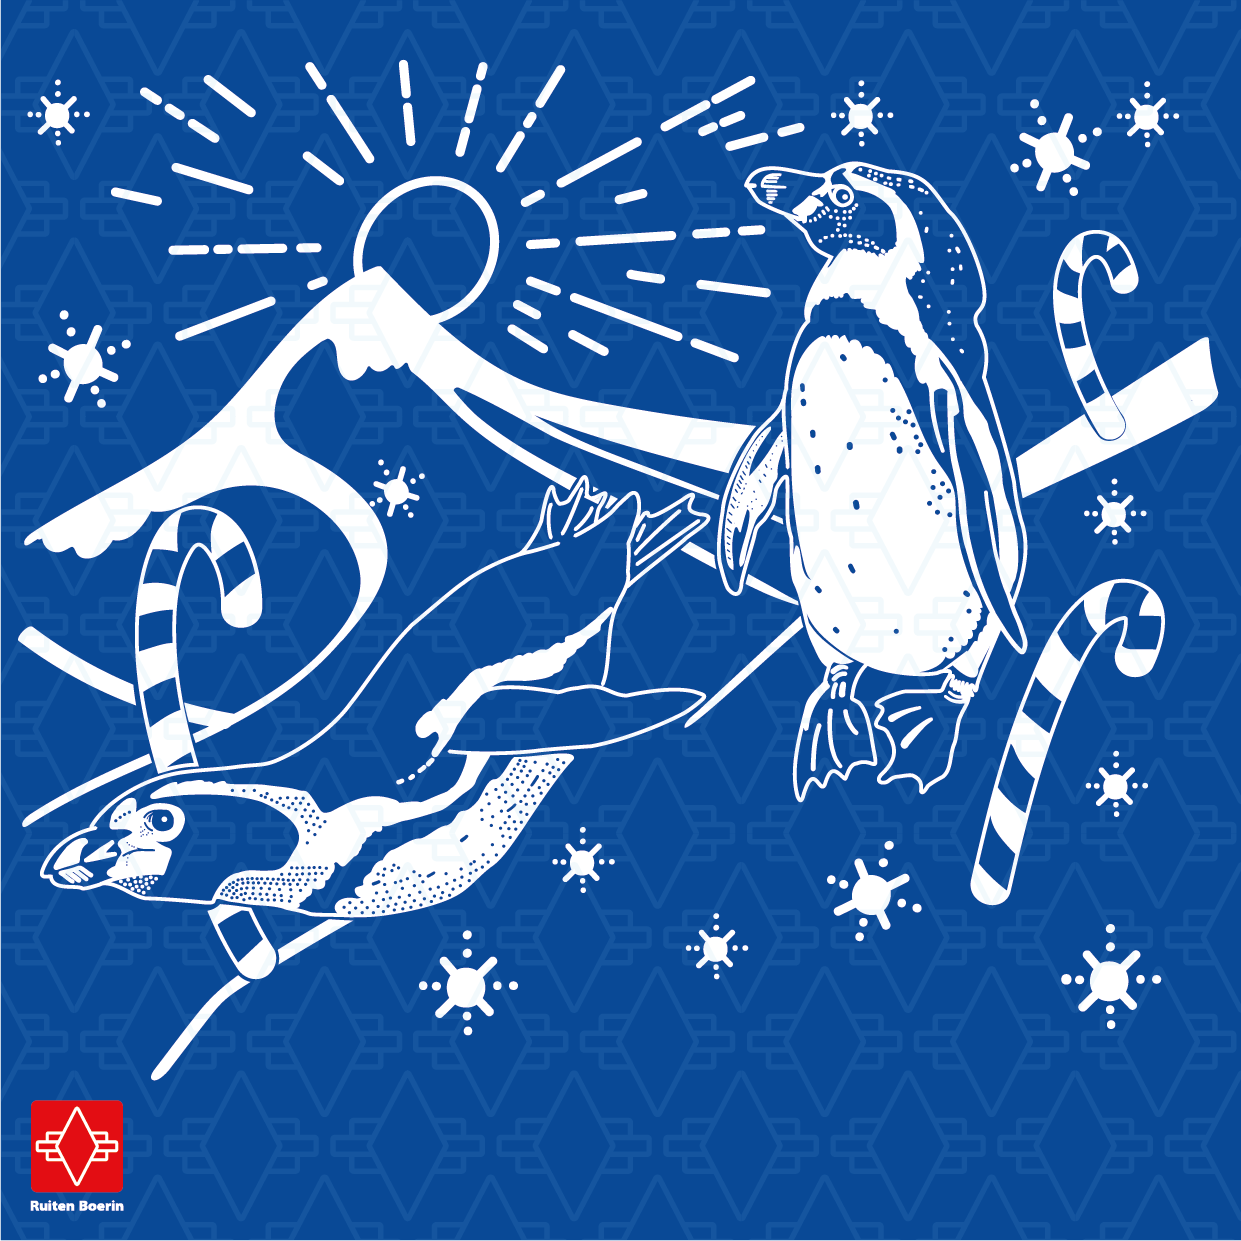 Pinguïn glijdt van berg met sneeuw af. Andere pinguïn staat ernaast. In de achtergrond schijnt de zon achter de bergen. Kerst sfeer met zuurstokken.